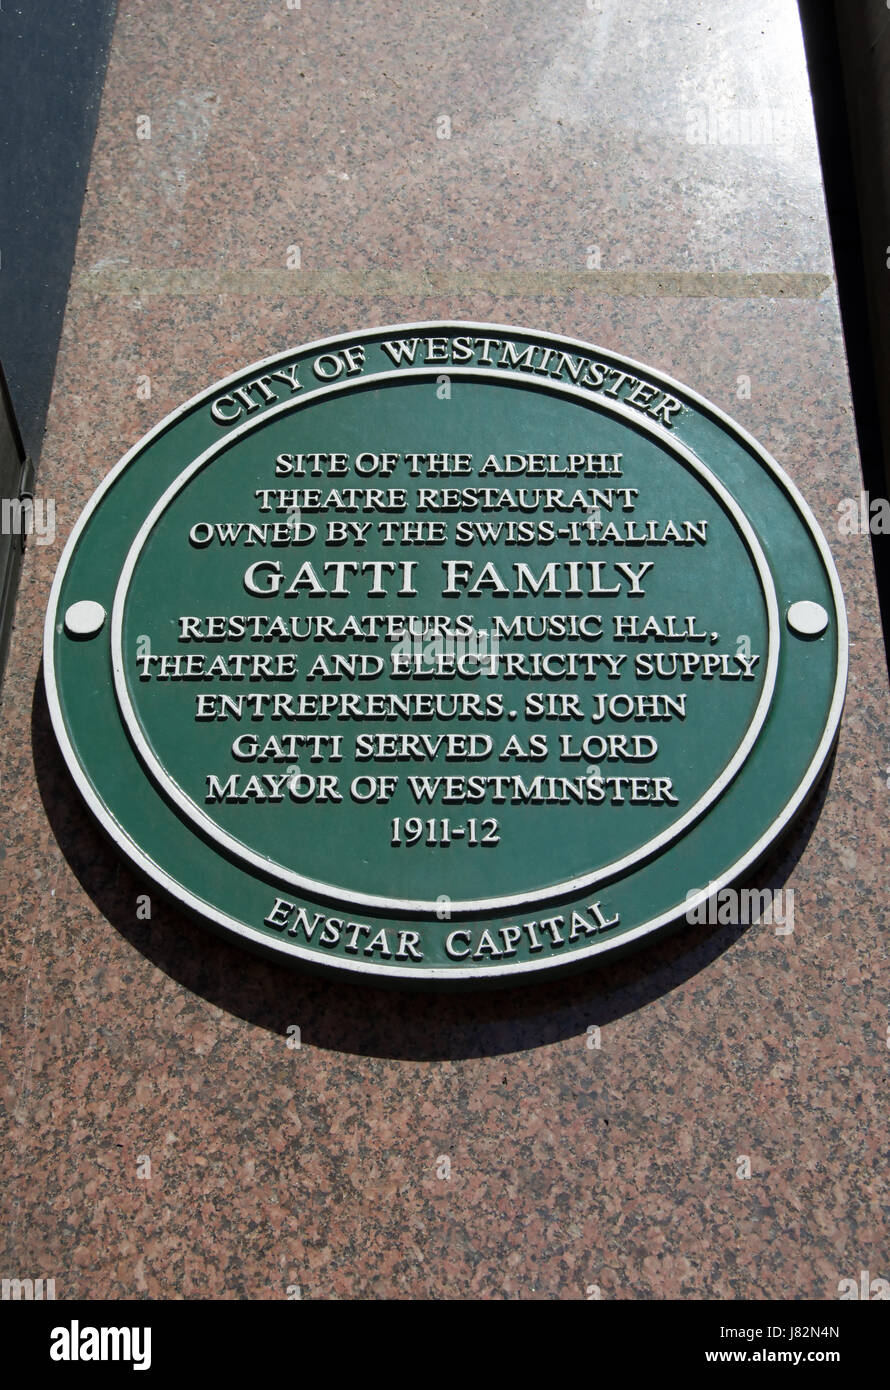 Stadt von Westminster grüne Plakette Kennzeichnung der Website von Adelphi Theater-Restaurant im Besitz der schweizerisch-italienischen Gatti Familie, Strand, London, england Stockfoto